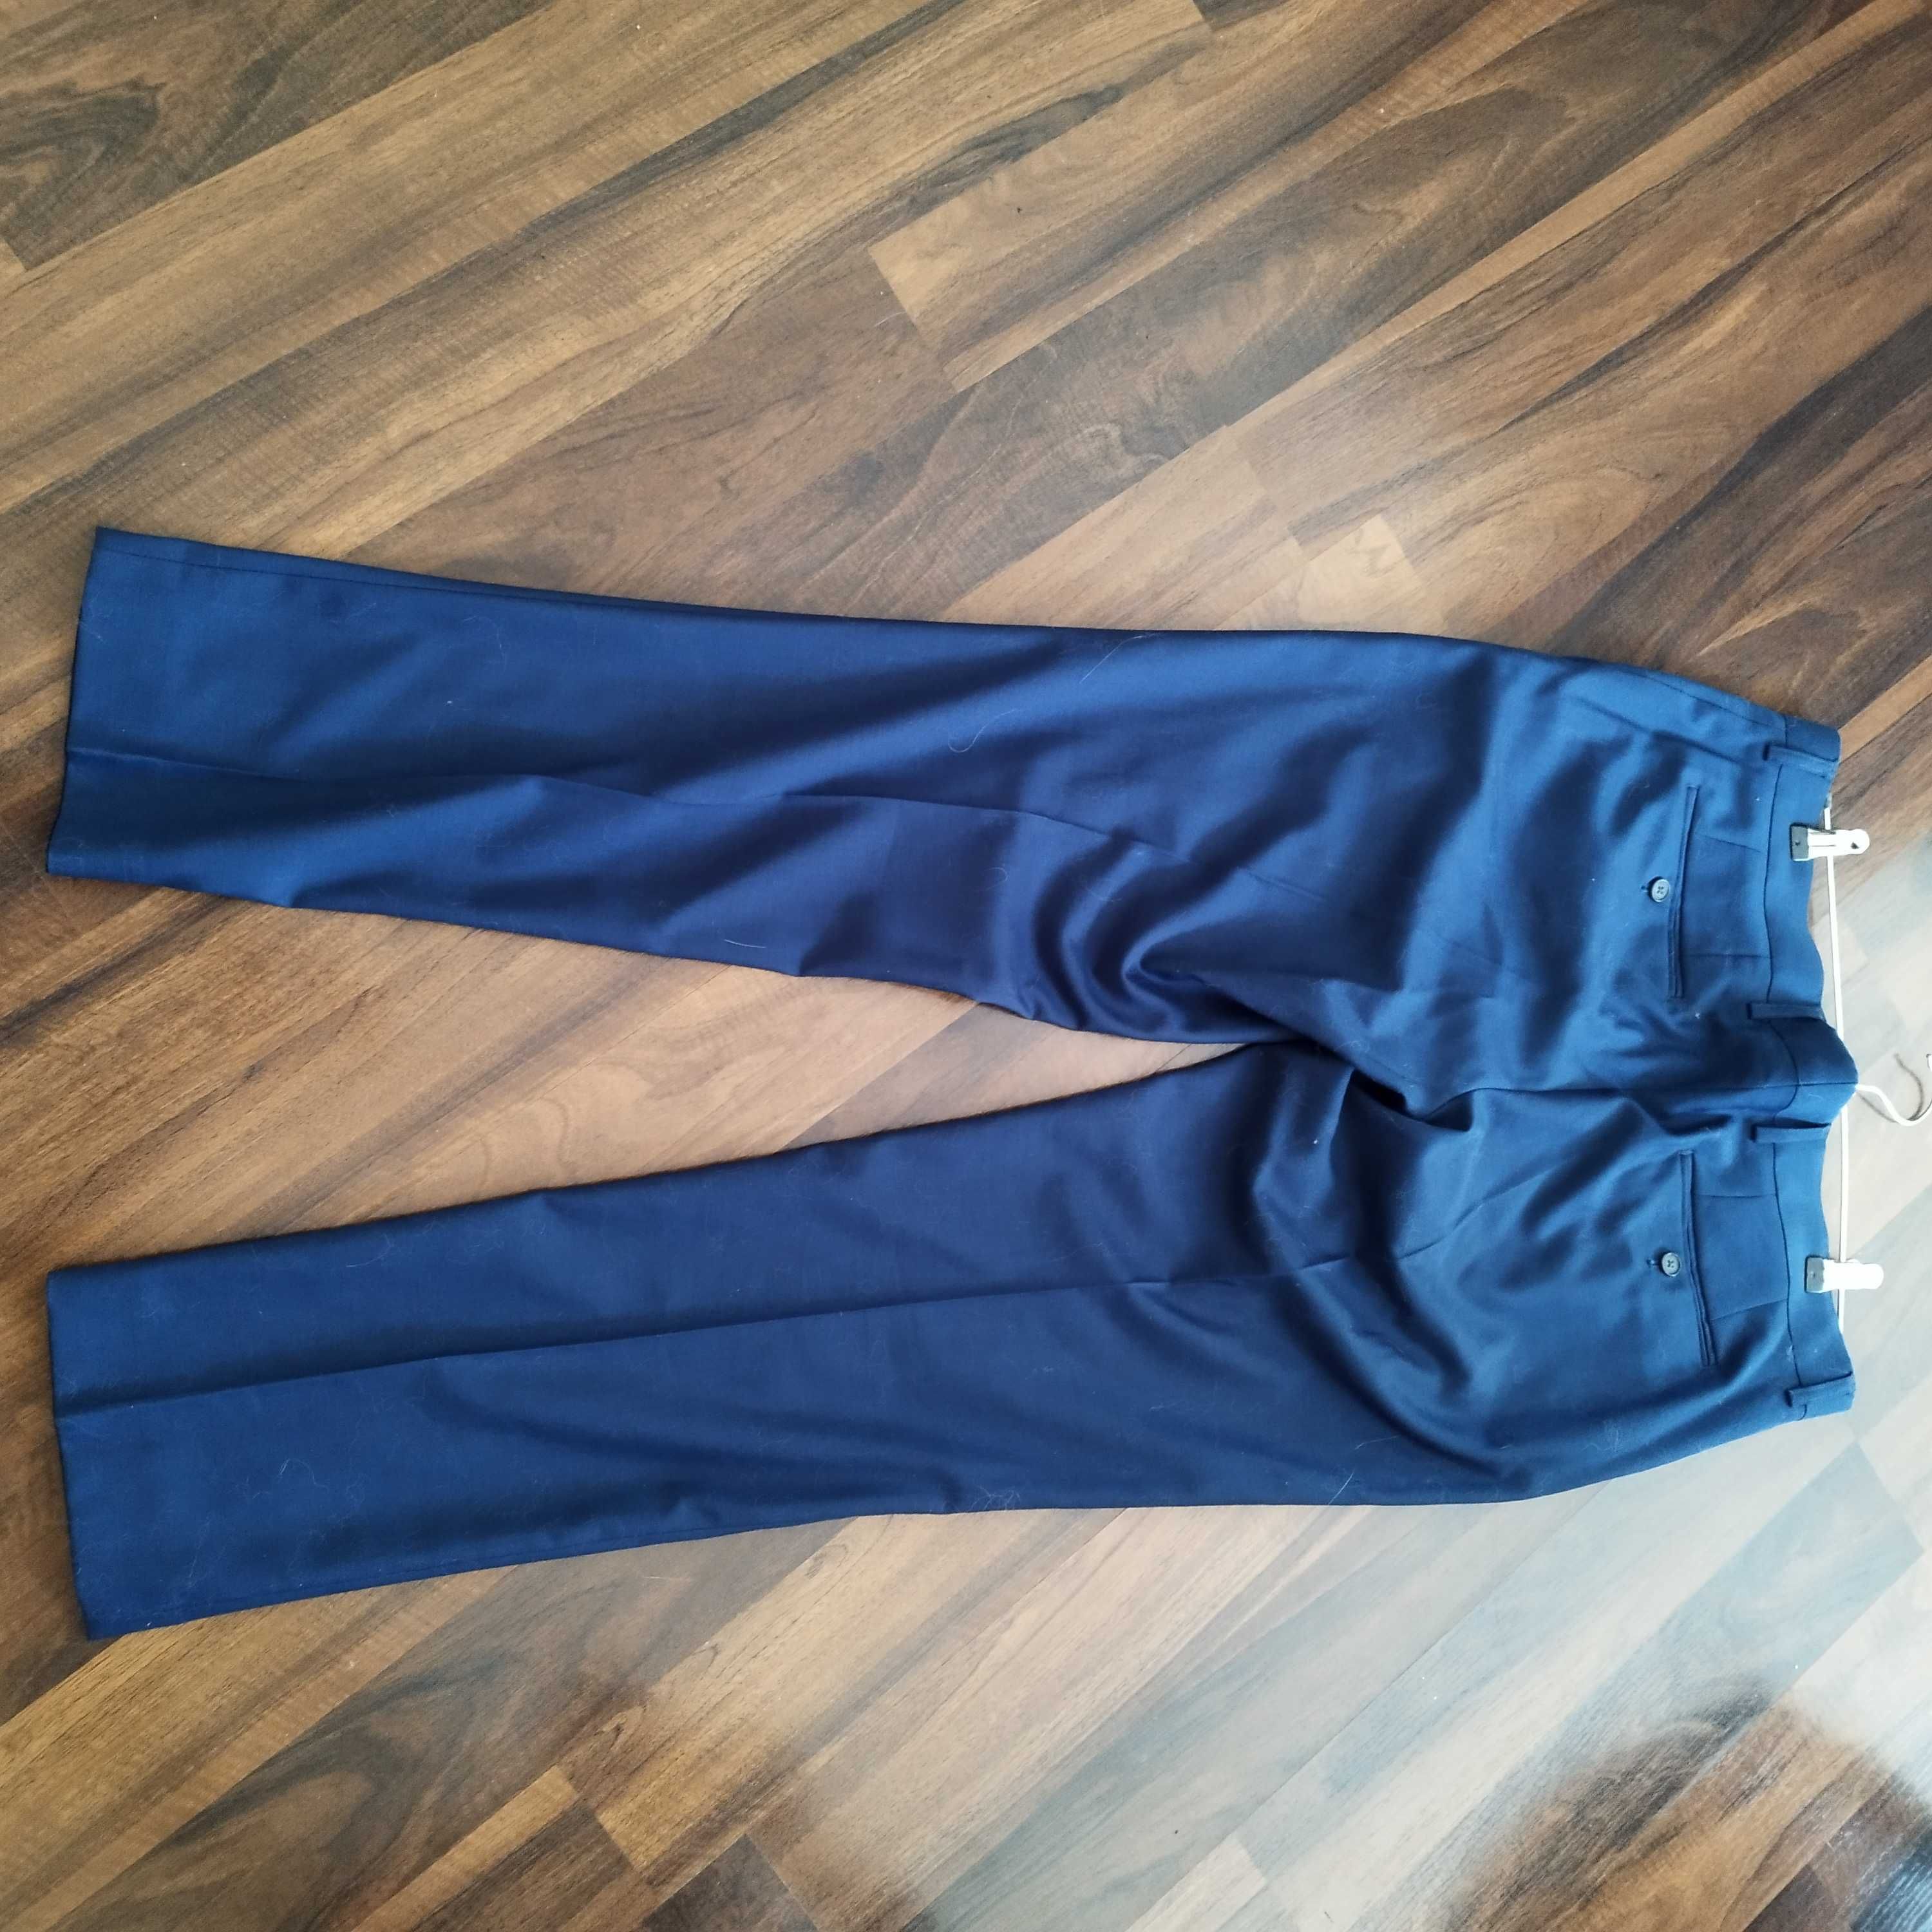 Sprzedam bardzo ładne męskie spodnie w kolorze kobaltowym/szafirowym